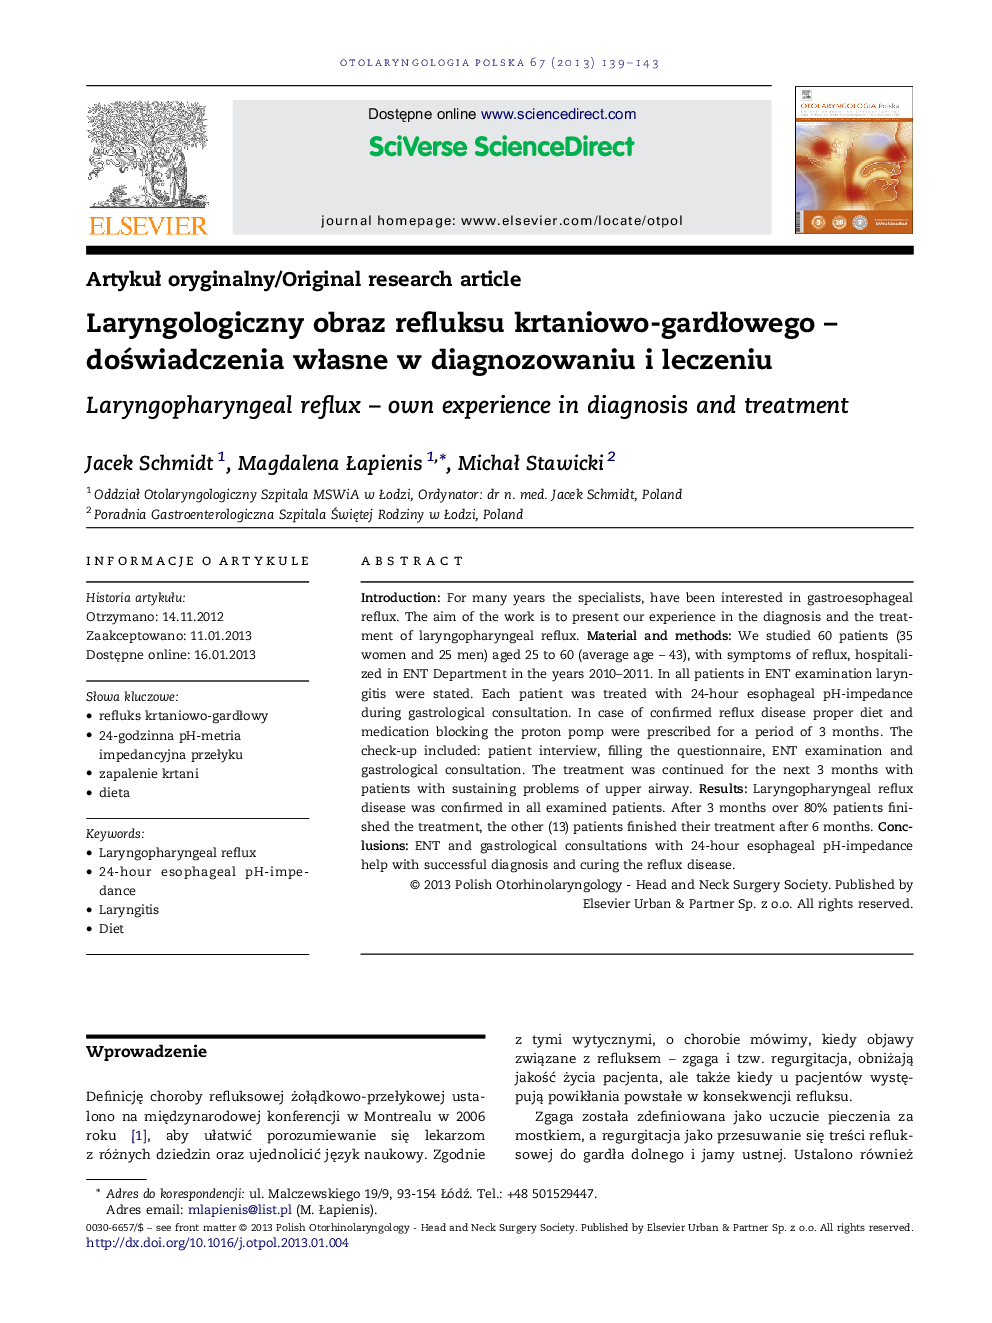 Laryngologiczny obraz refluksu krtaniowo-gardÅowego - doÅwiadczenia wÅasne w diagnozowaniu i leczeniu